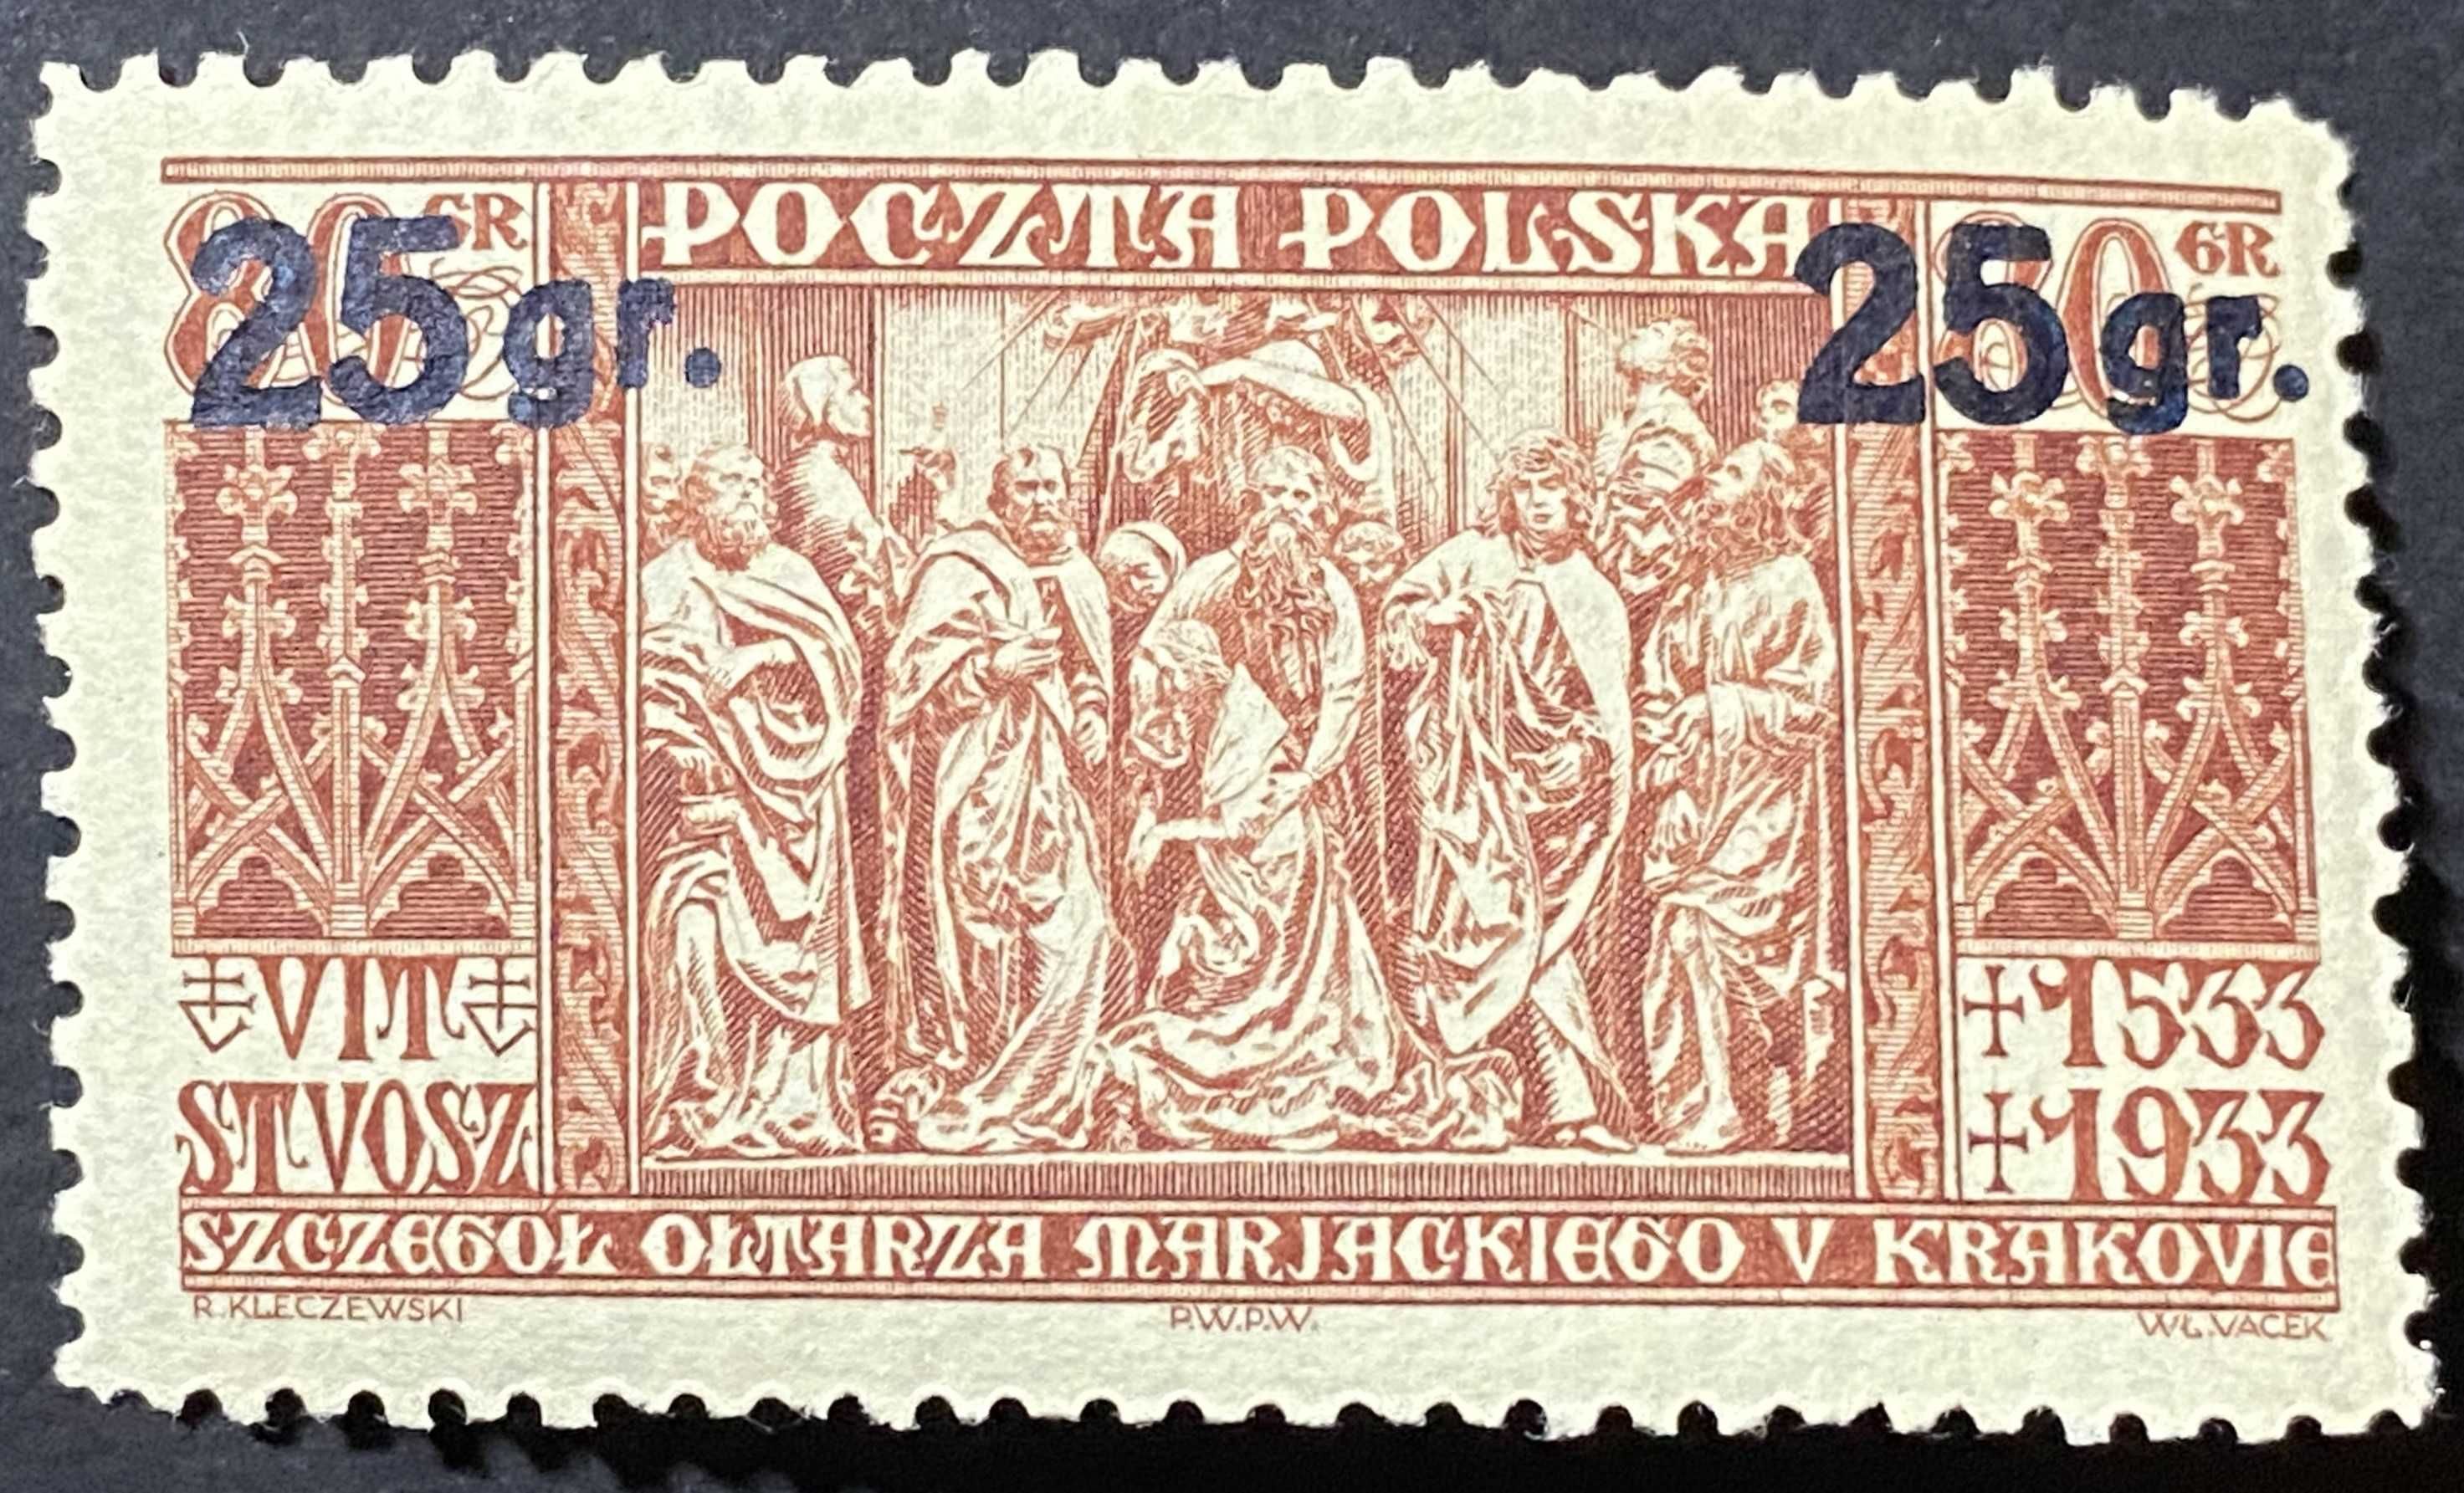 Znaczek Polska Fi 270 IIb Wydanie przedrukowane 1934r